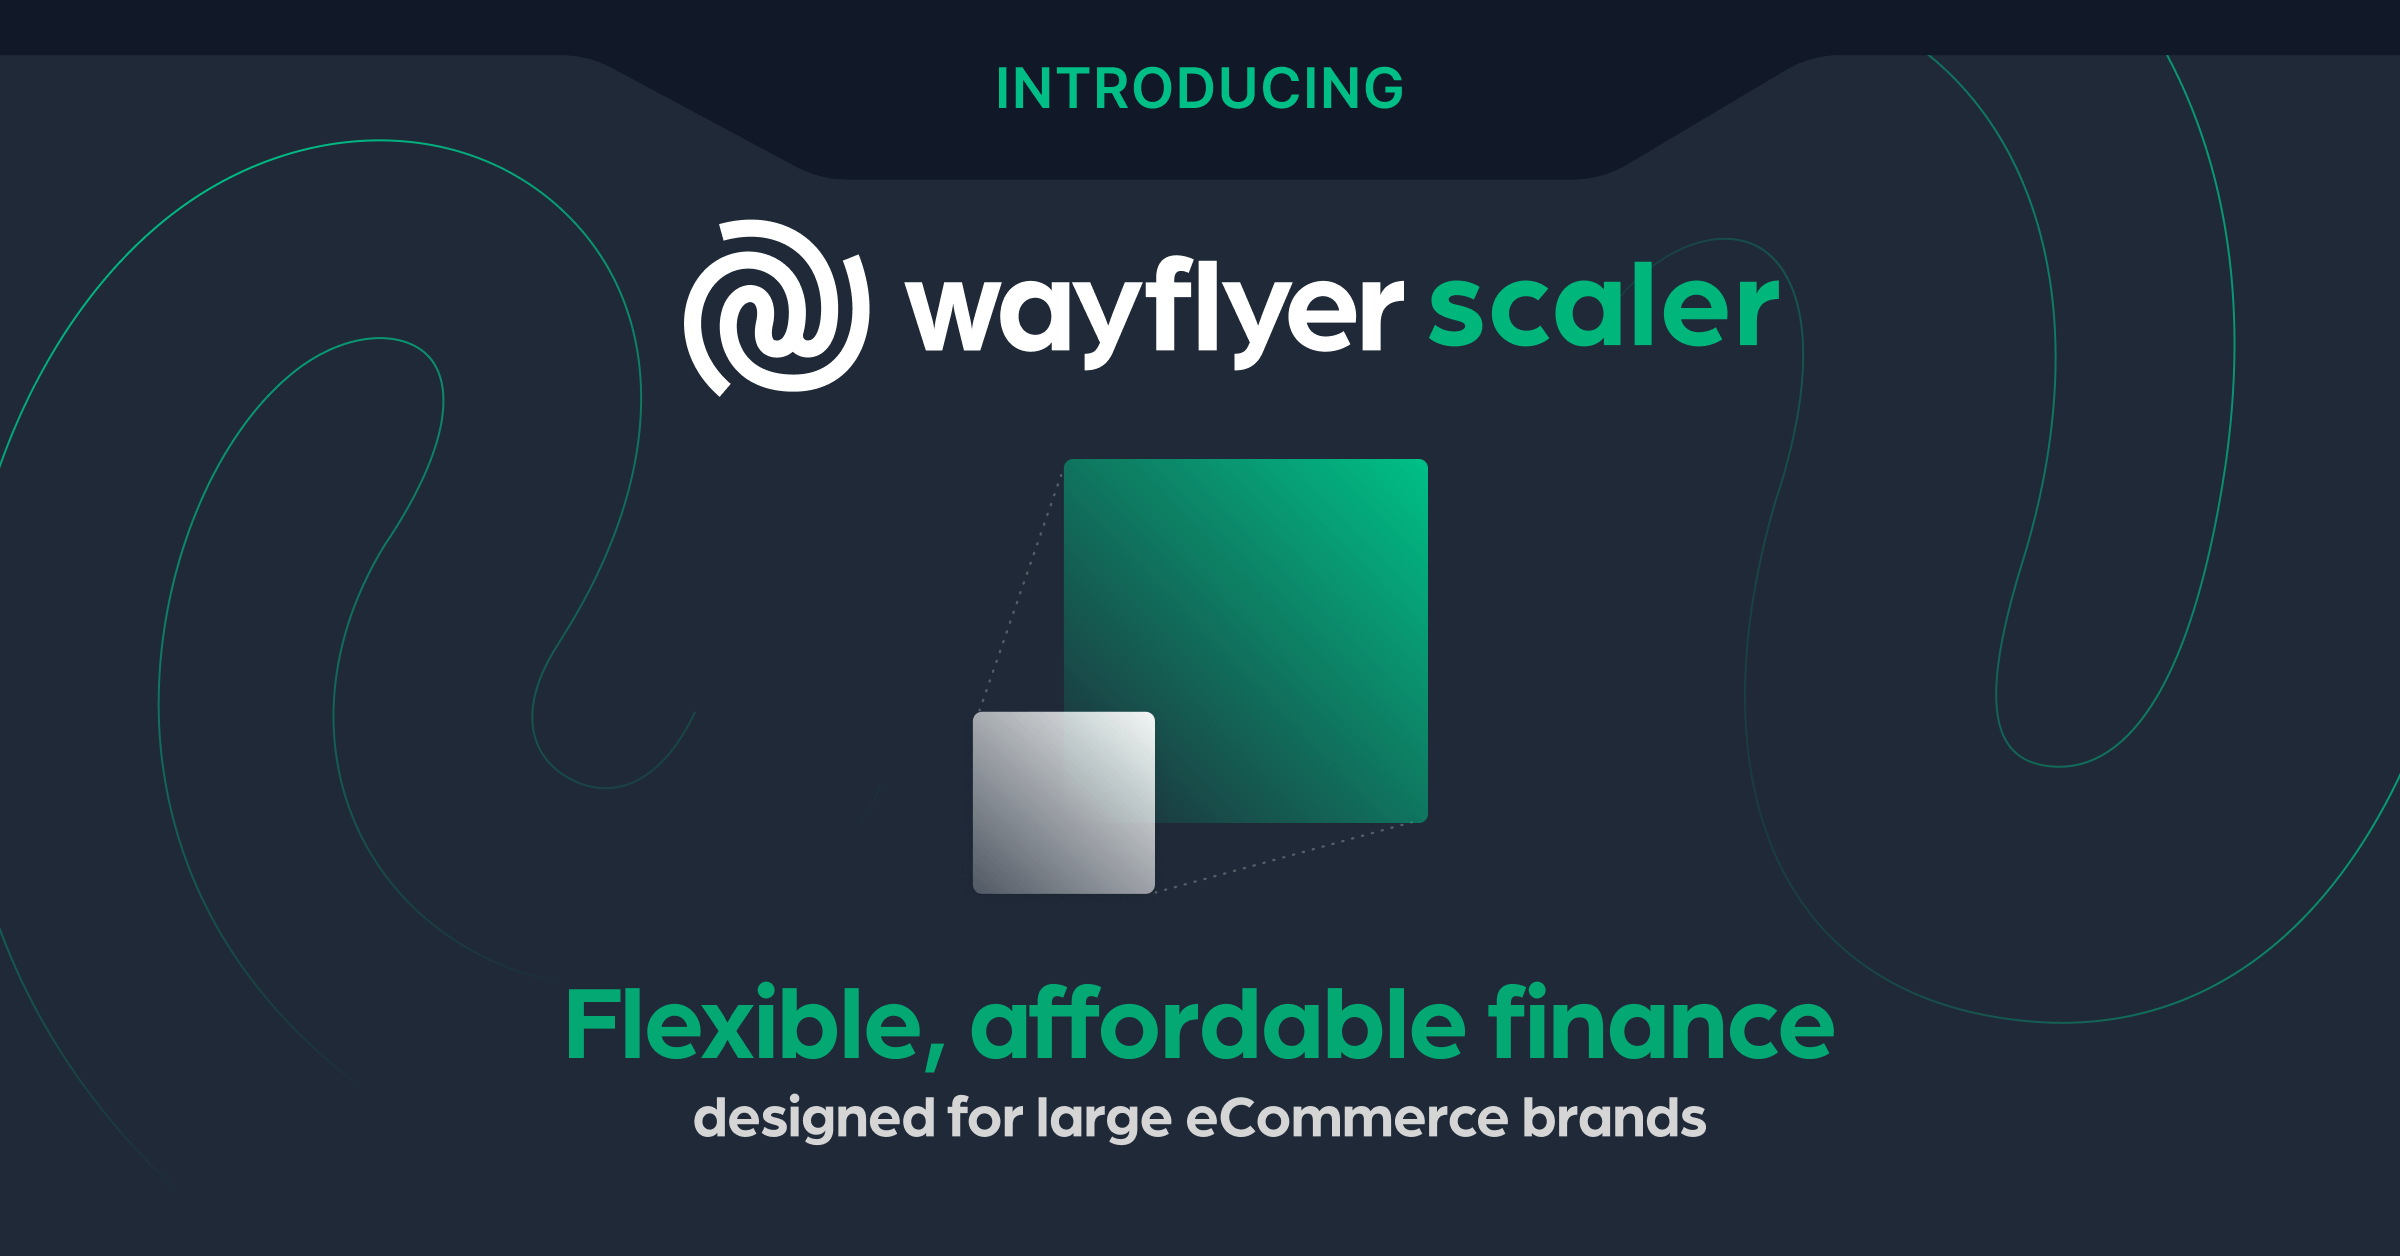 Ankündigung von Wayflyer Scaler: Unser neuestes Angebot, um die Probleme bei der Beschaffung von Geschäftskapital für große E-Commerce-Unternehmen zu lösen            